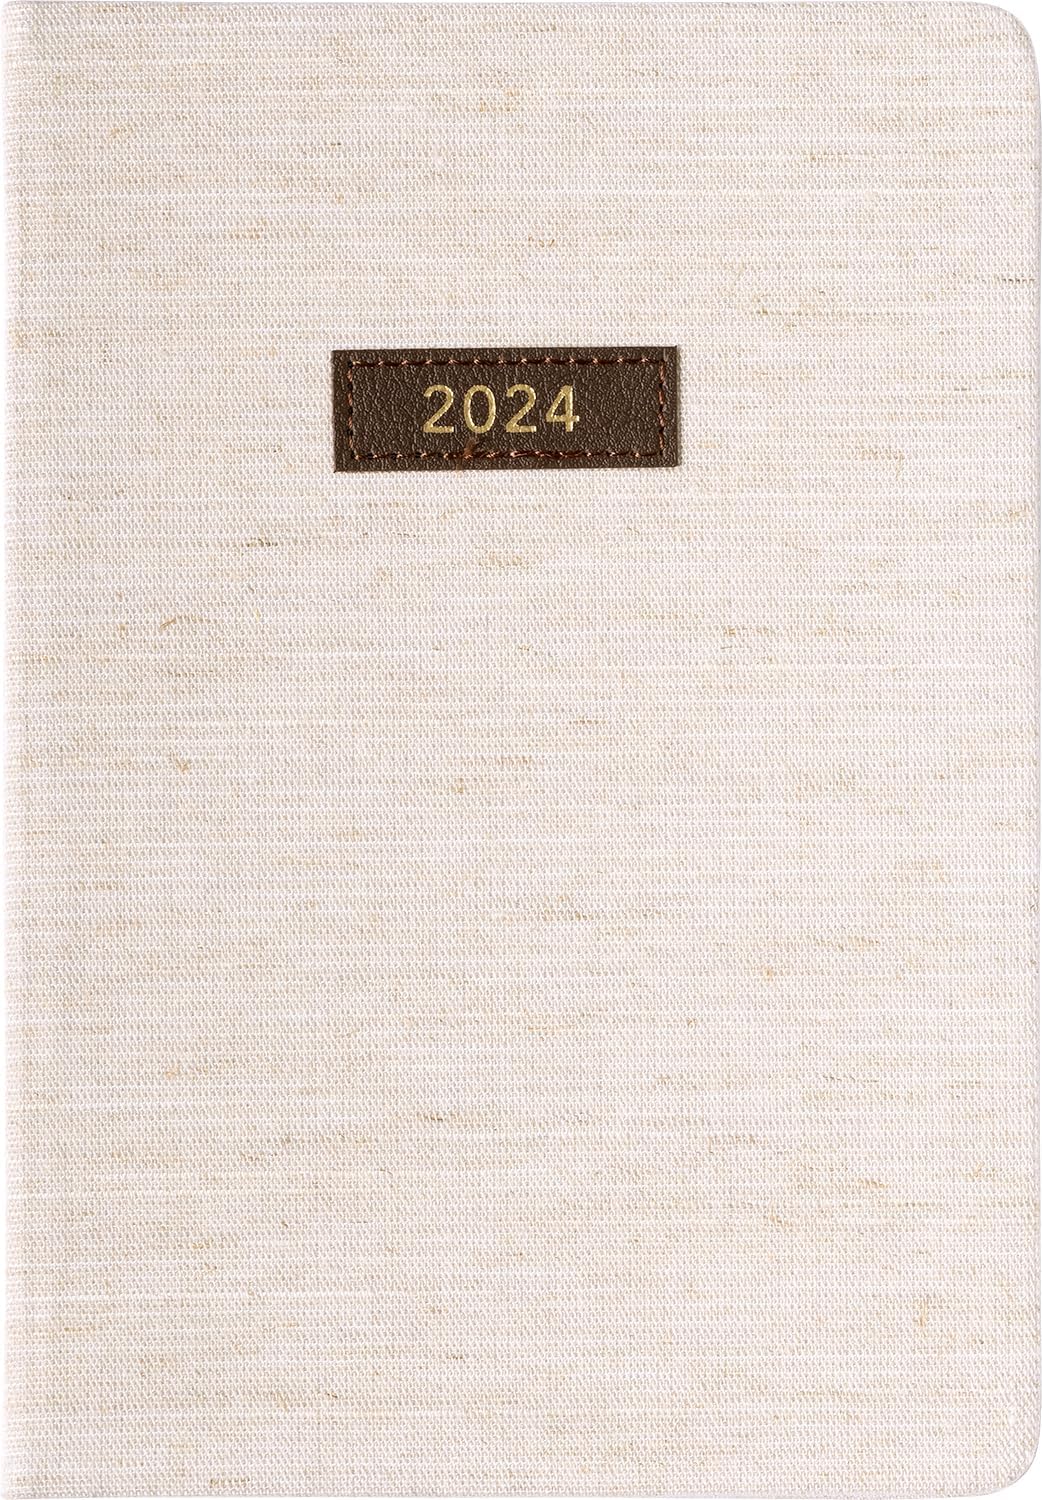 2024 Linen 6x8 Bound Planner